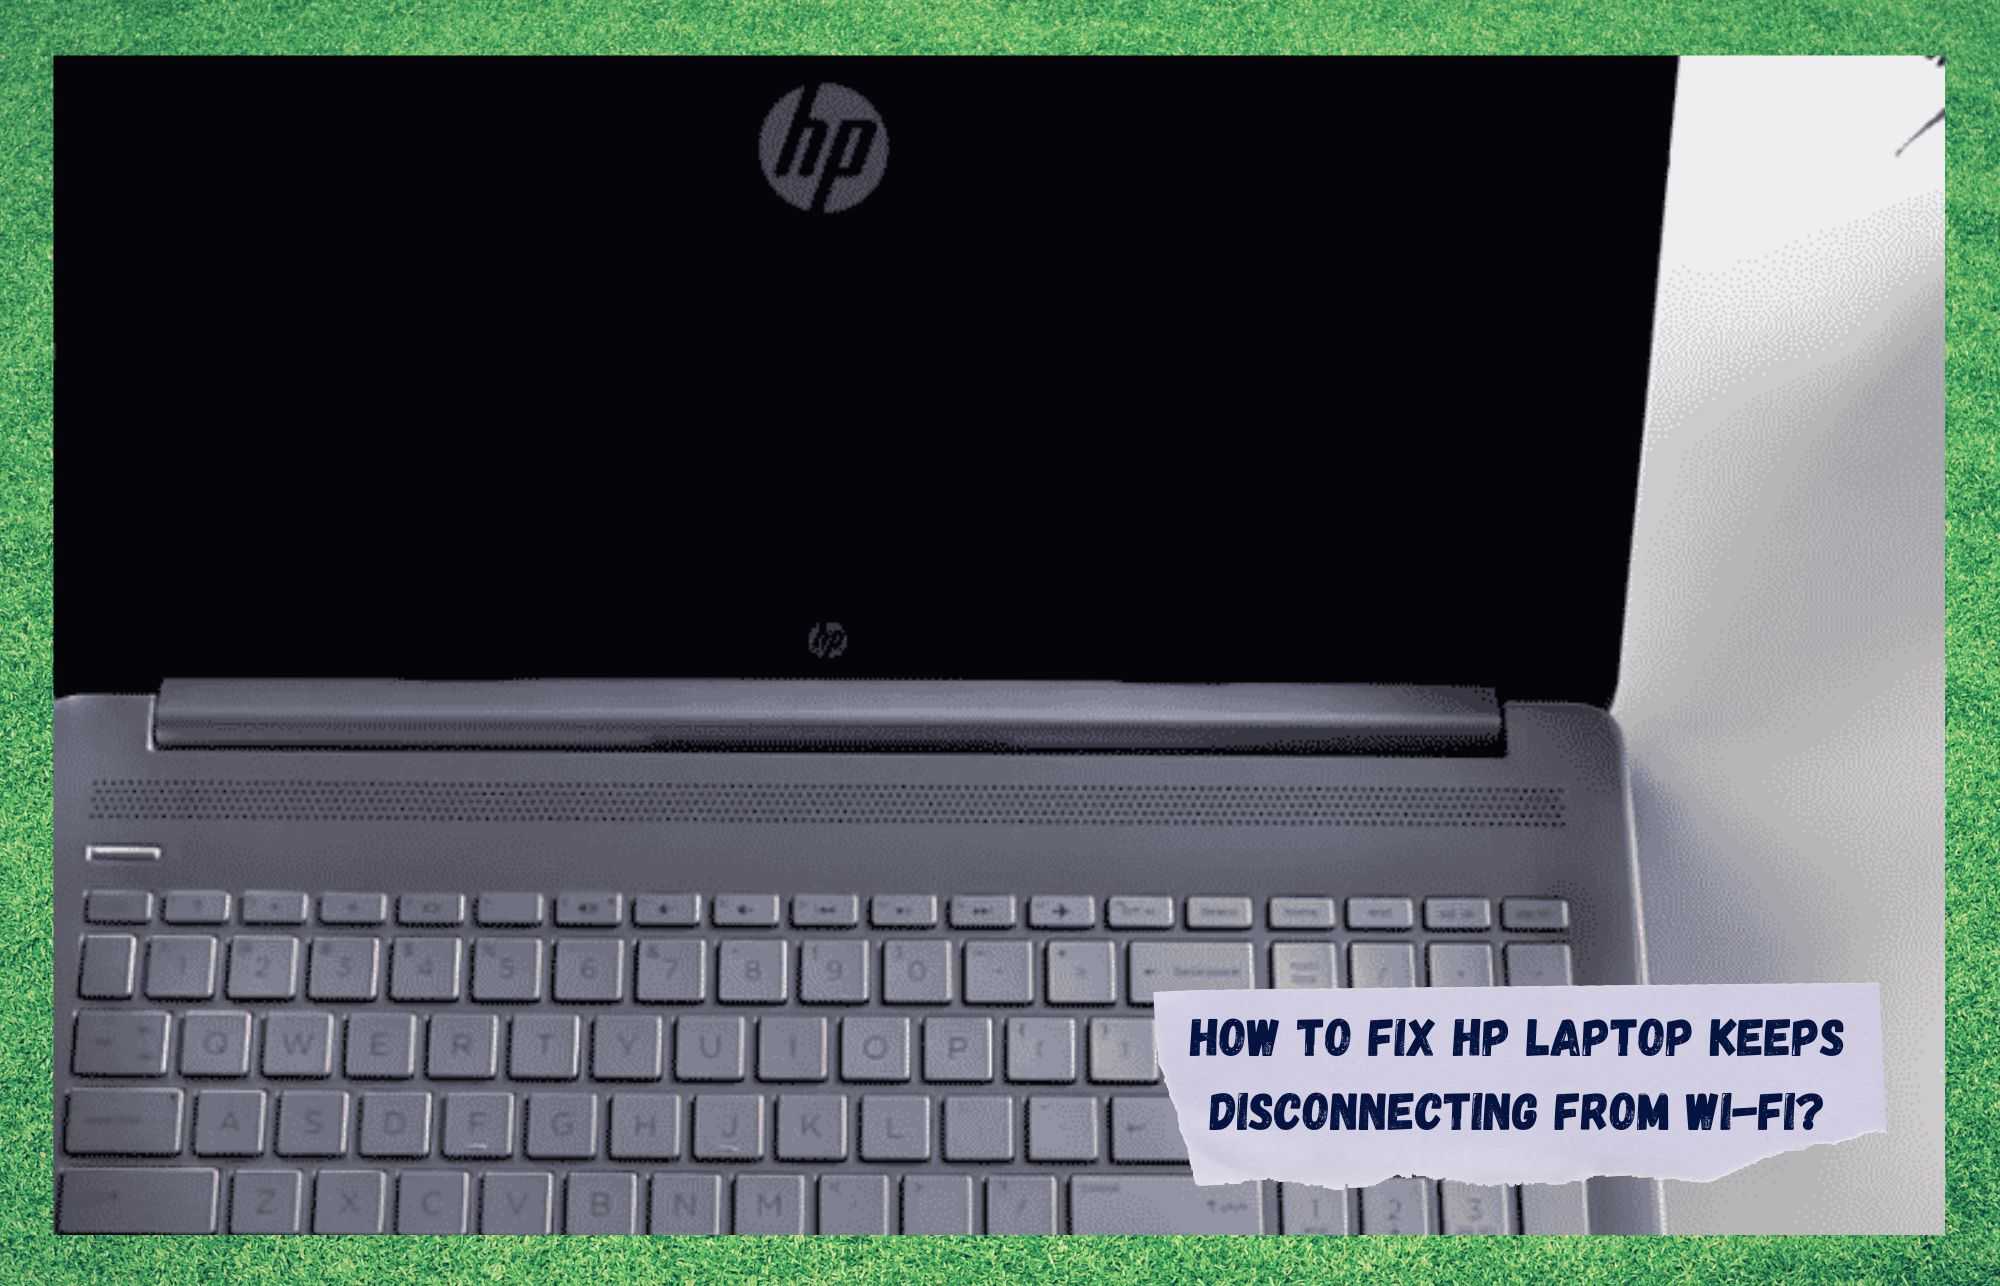 6 tapaa korjata HP-kannettavan tietokoneen yhteyden katkeaminen Wi-Fi-yhteydestä